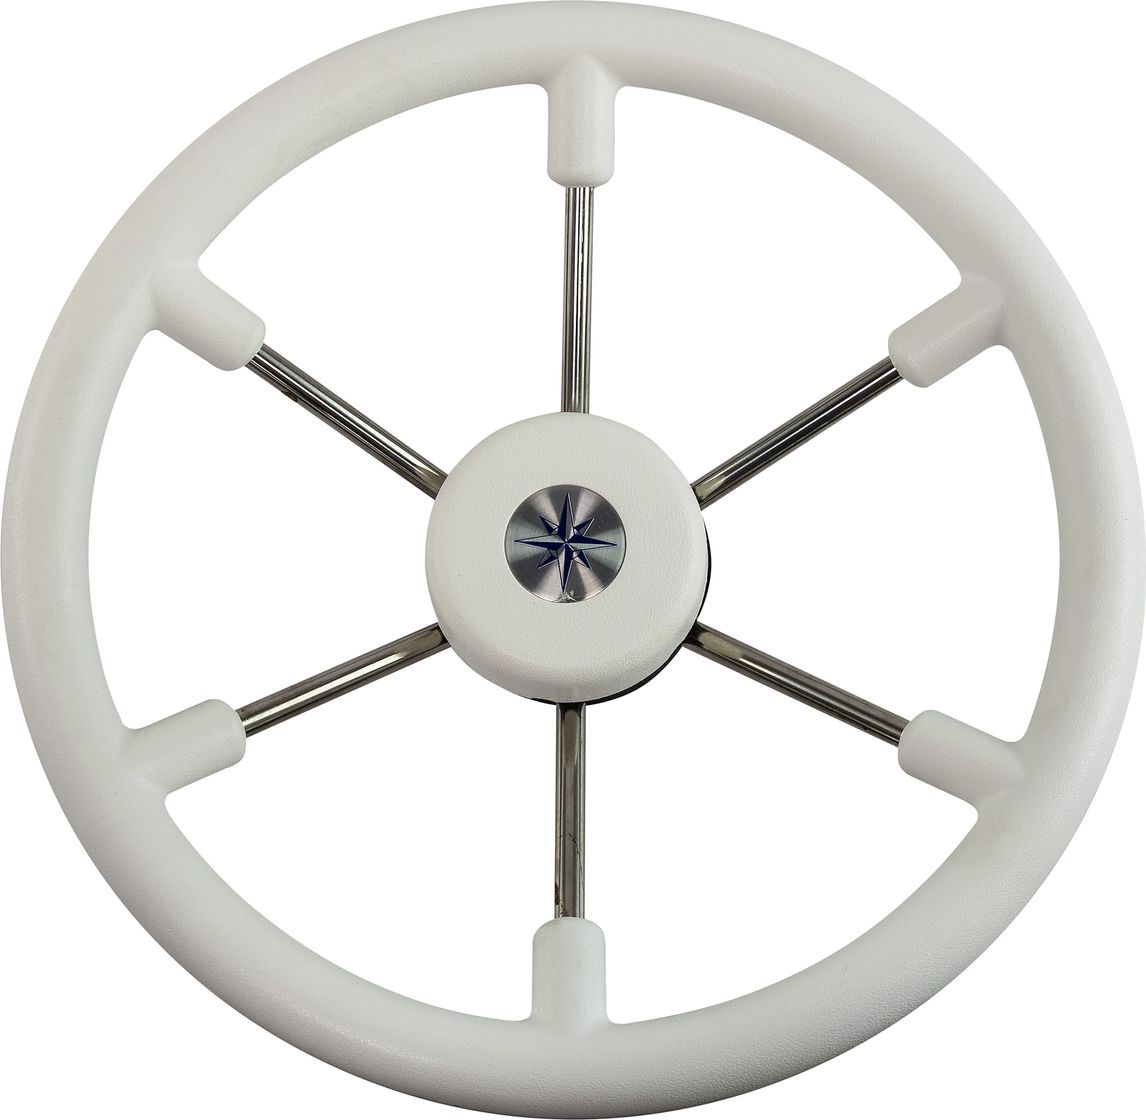 Рулевое колесо LEADER TANEGUM белый обод серебряные спицы д. 360 мм VN7360-08 рулевое колесо leader plast белый обод серебряные спицы д 330 мм vn8330 08